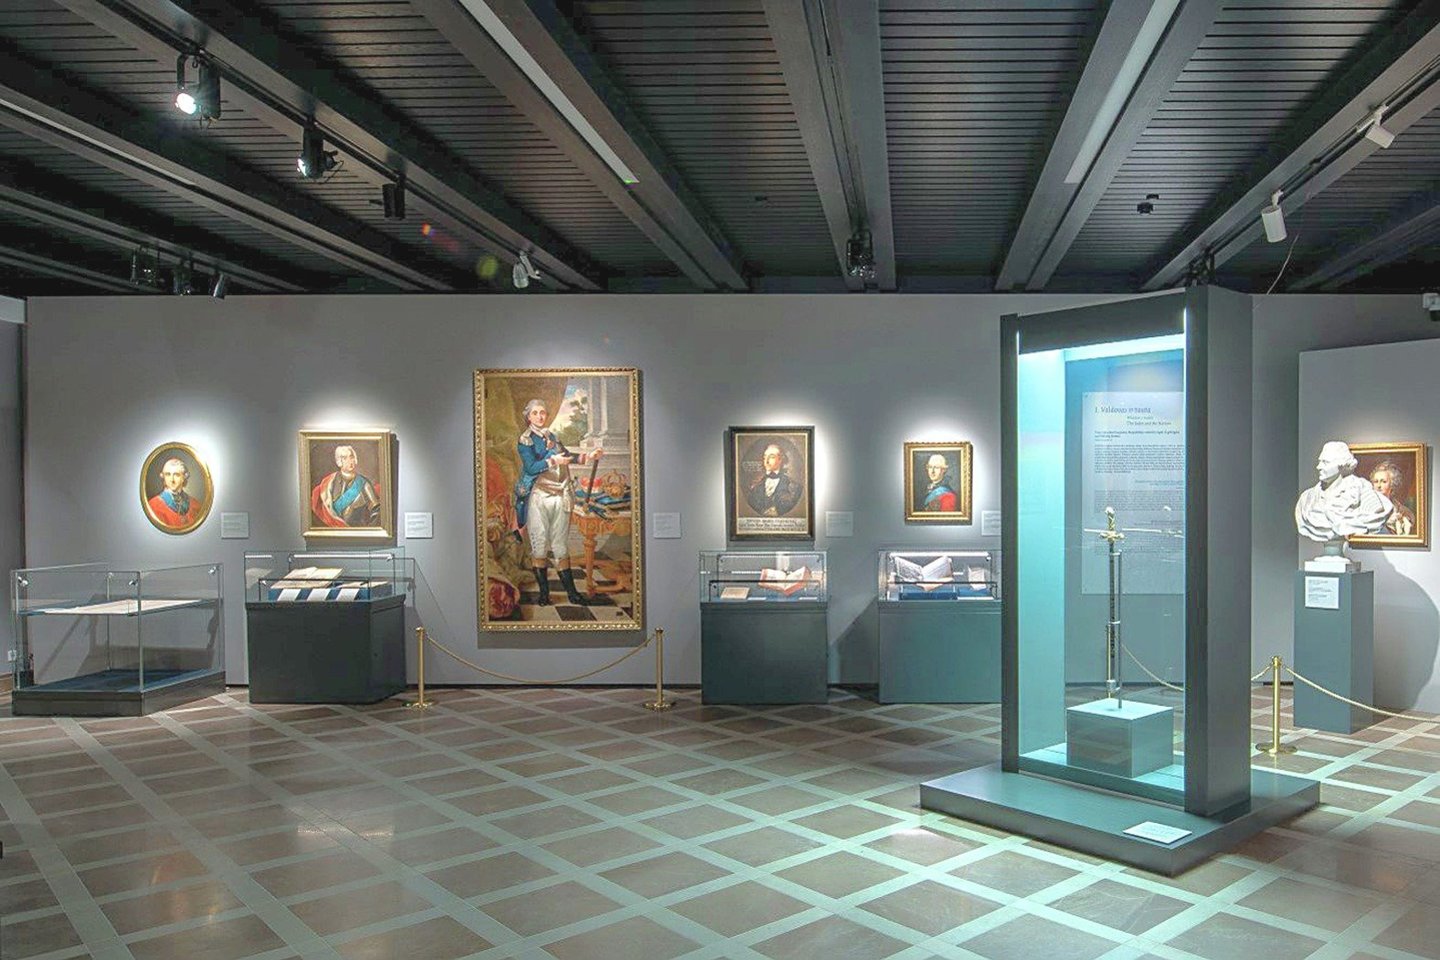 Valdovų rūmuose vykusios parodos „Kad Tėvynė gyvuotų. Lietuva ir Lenkija 1791 m. konstitucijos epochoje“ metu buvo surengta daug nemokamų paskaitų.<br>Valdovų rūmų muziejaus nuotr.